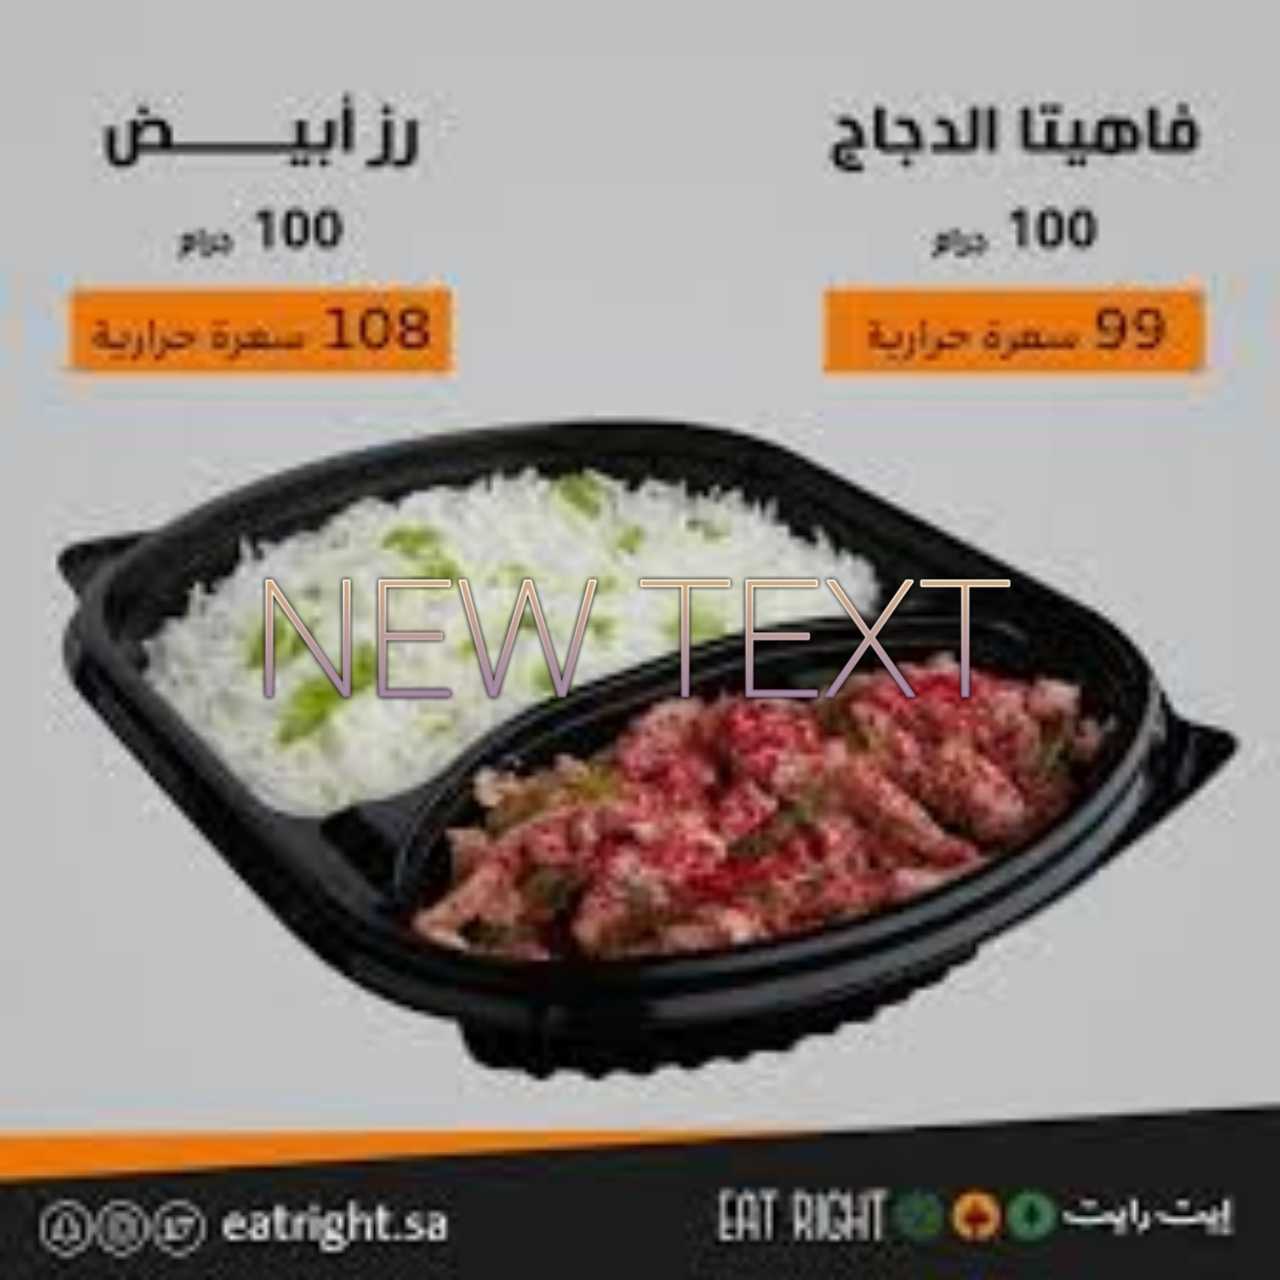 مطاعم دايت الرياض